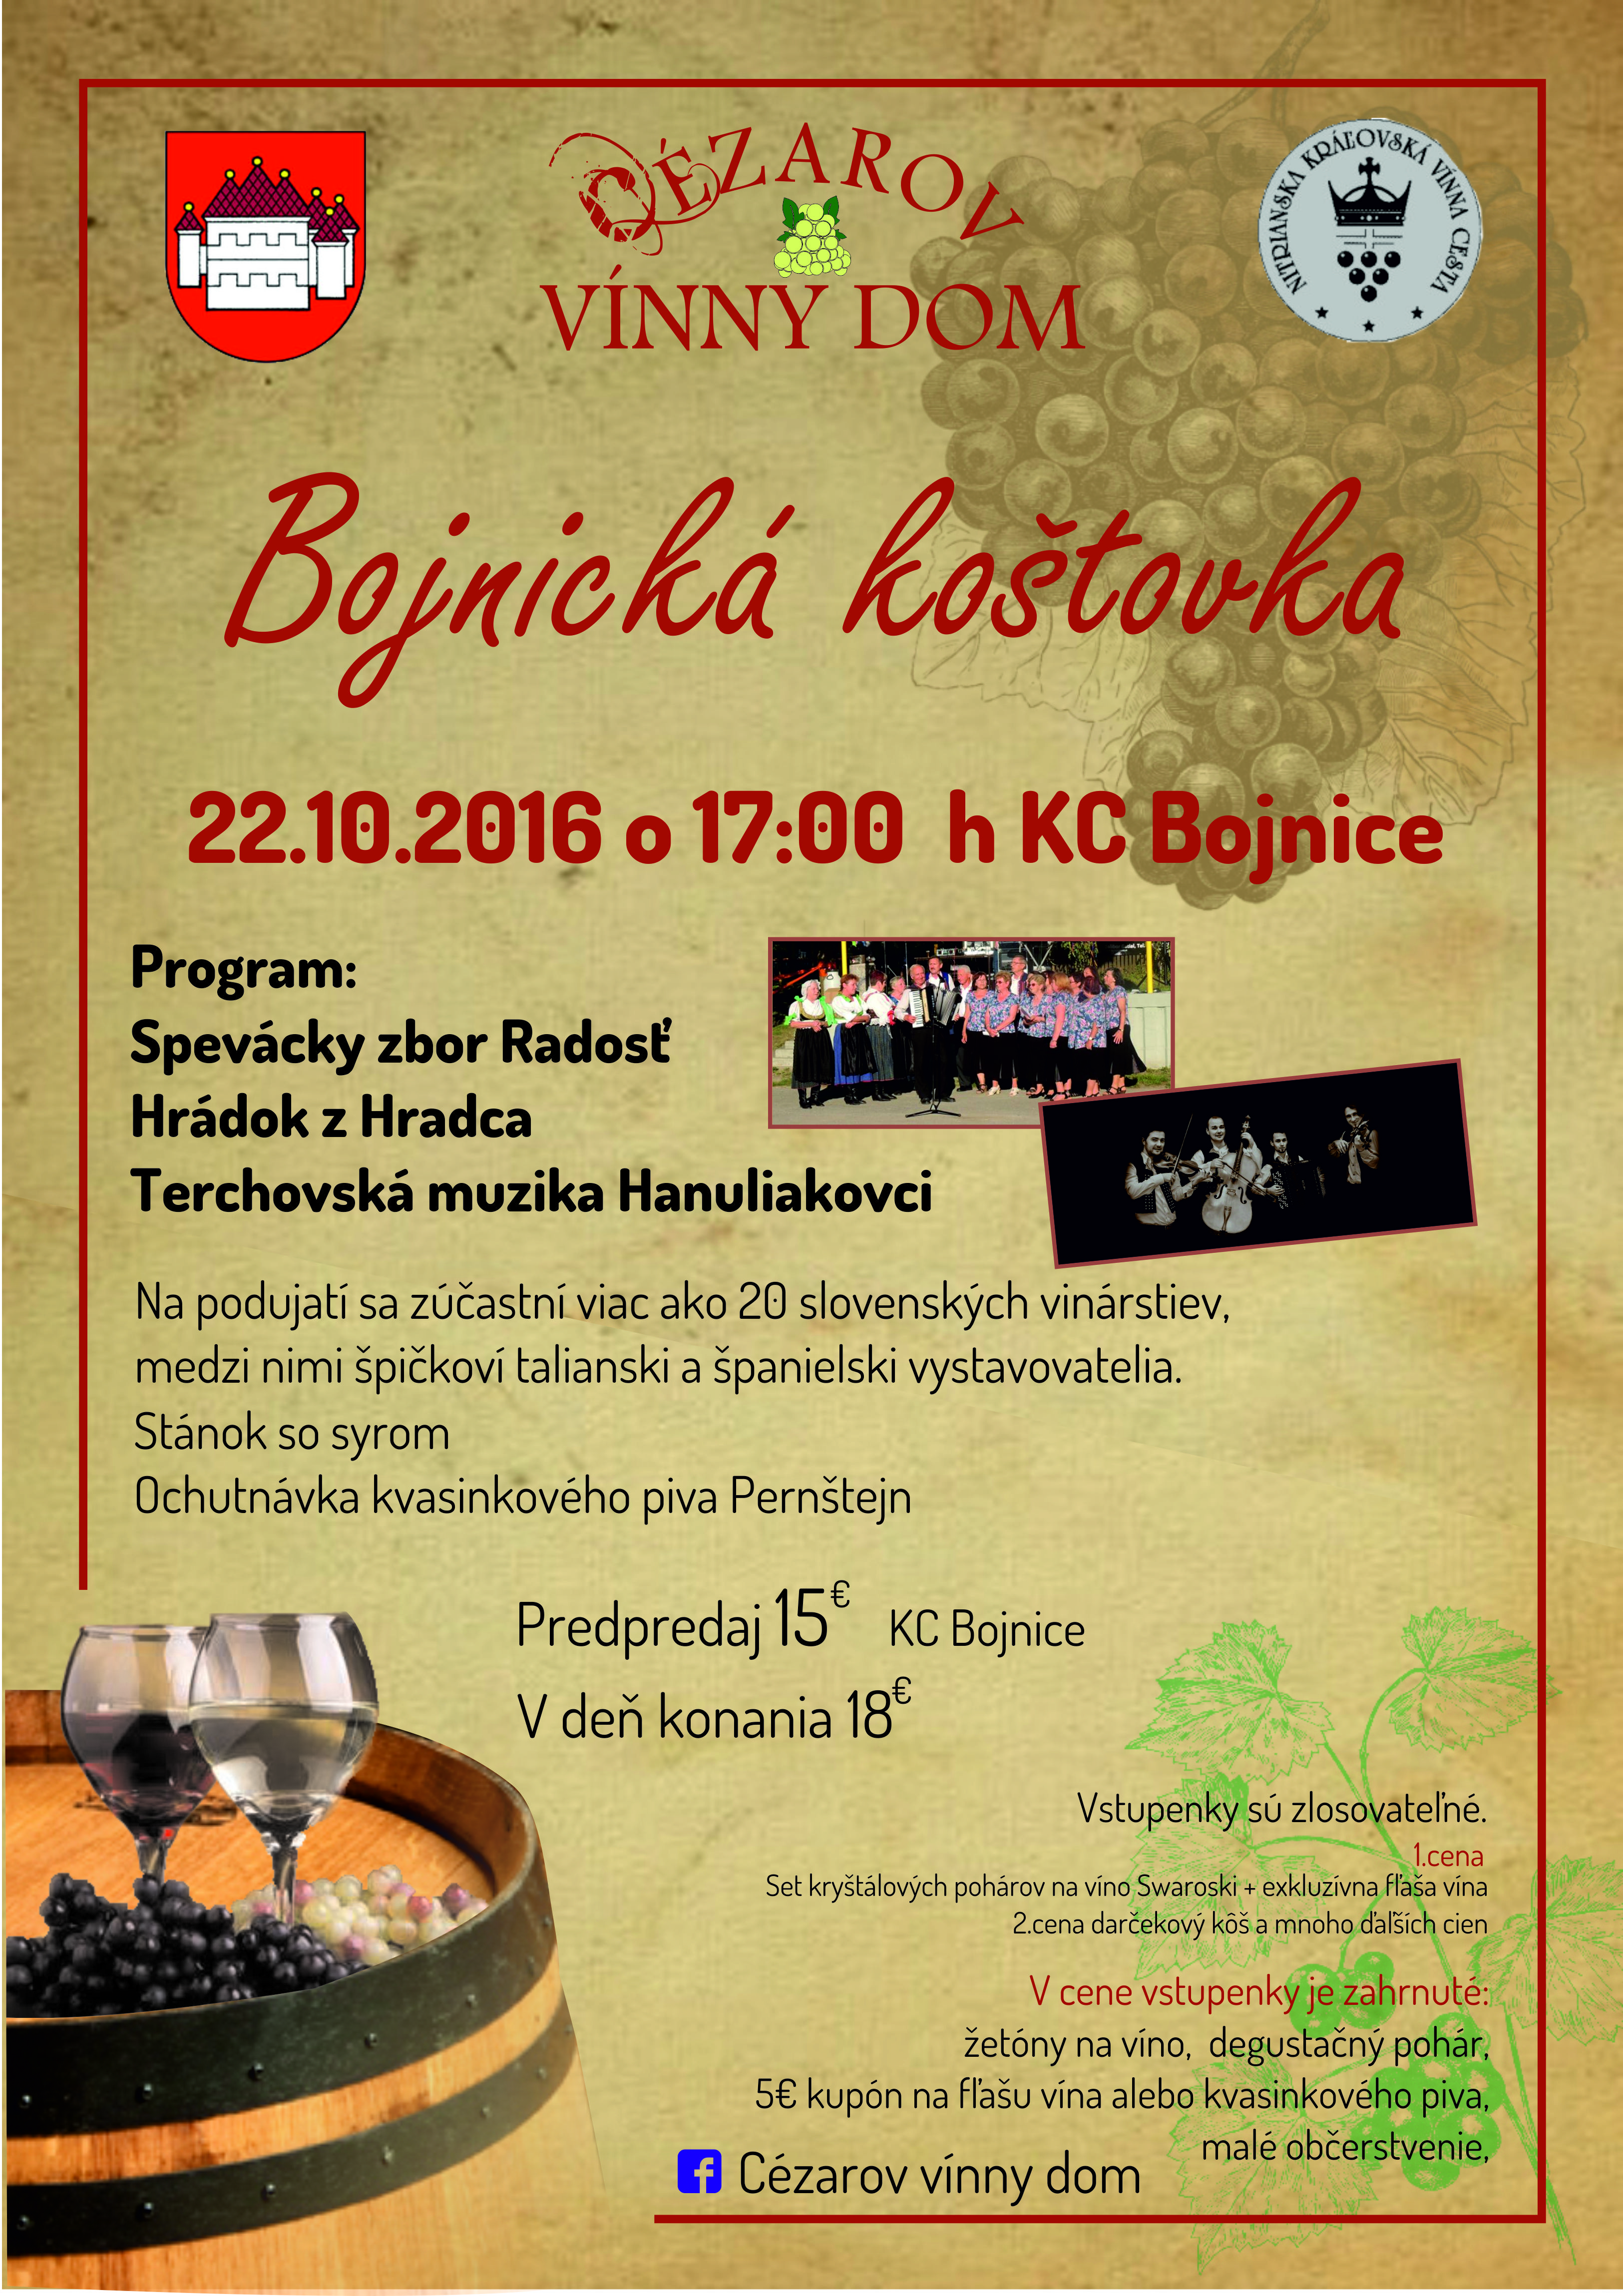 Bojnick kotovka 2016